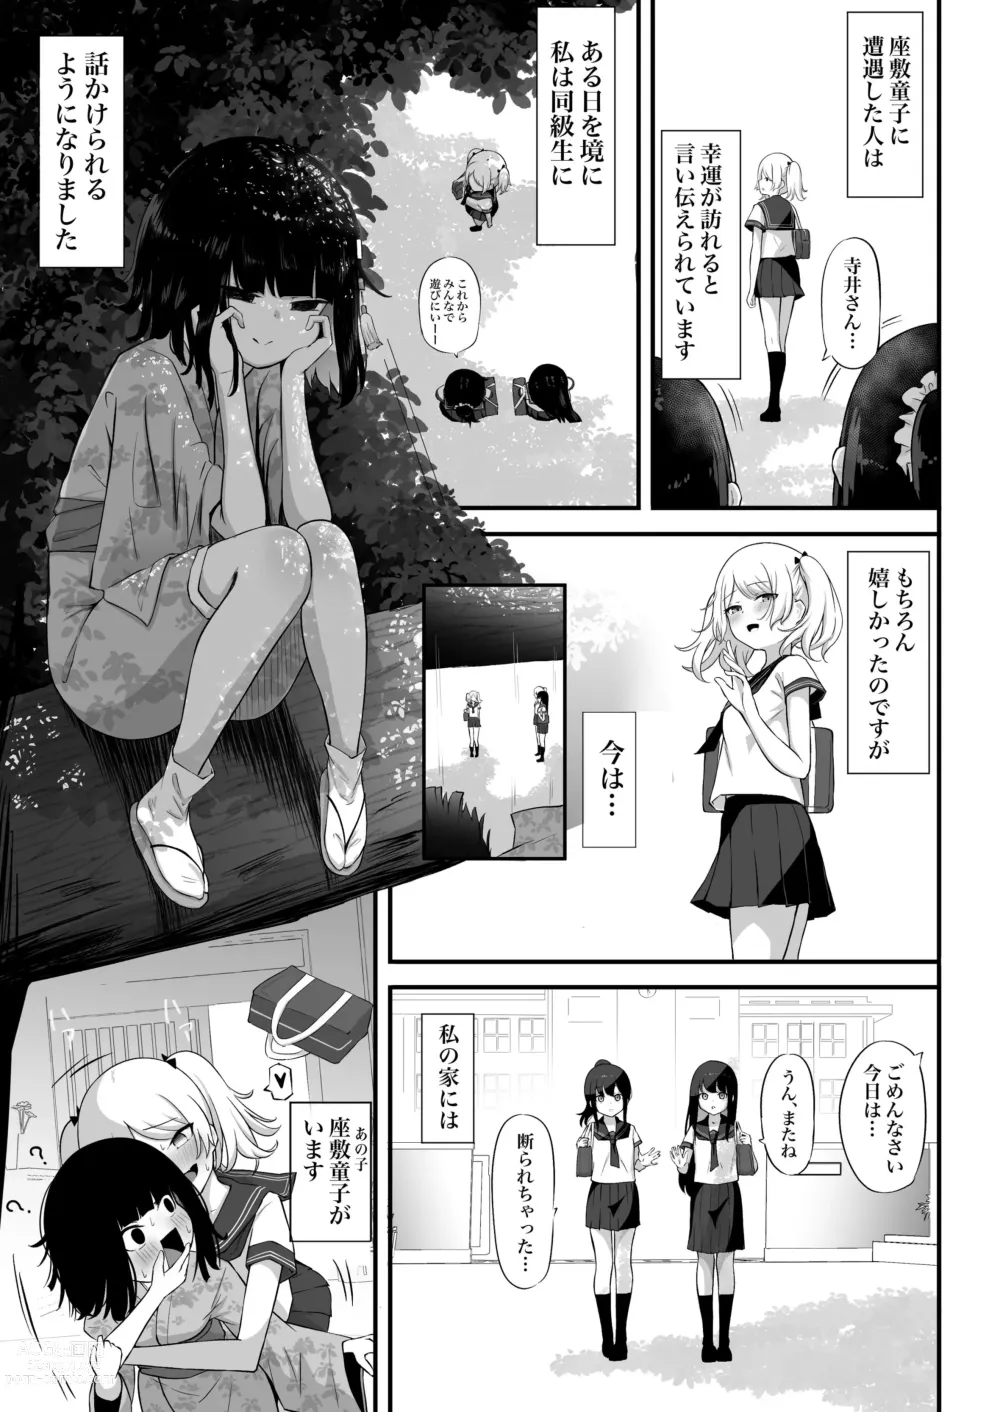 Page 14 of doujinshi Watashi no Ie ni wa Zashikiwarashi ga Imasu.